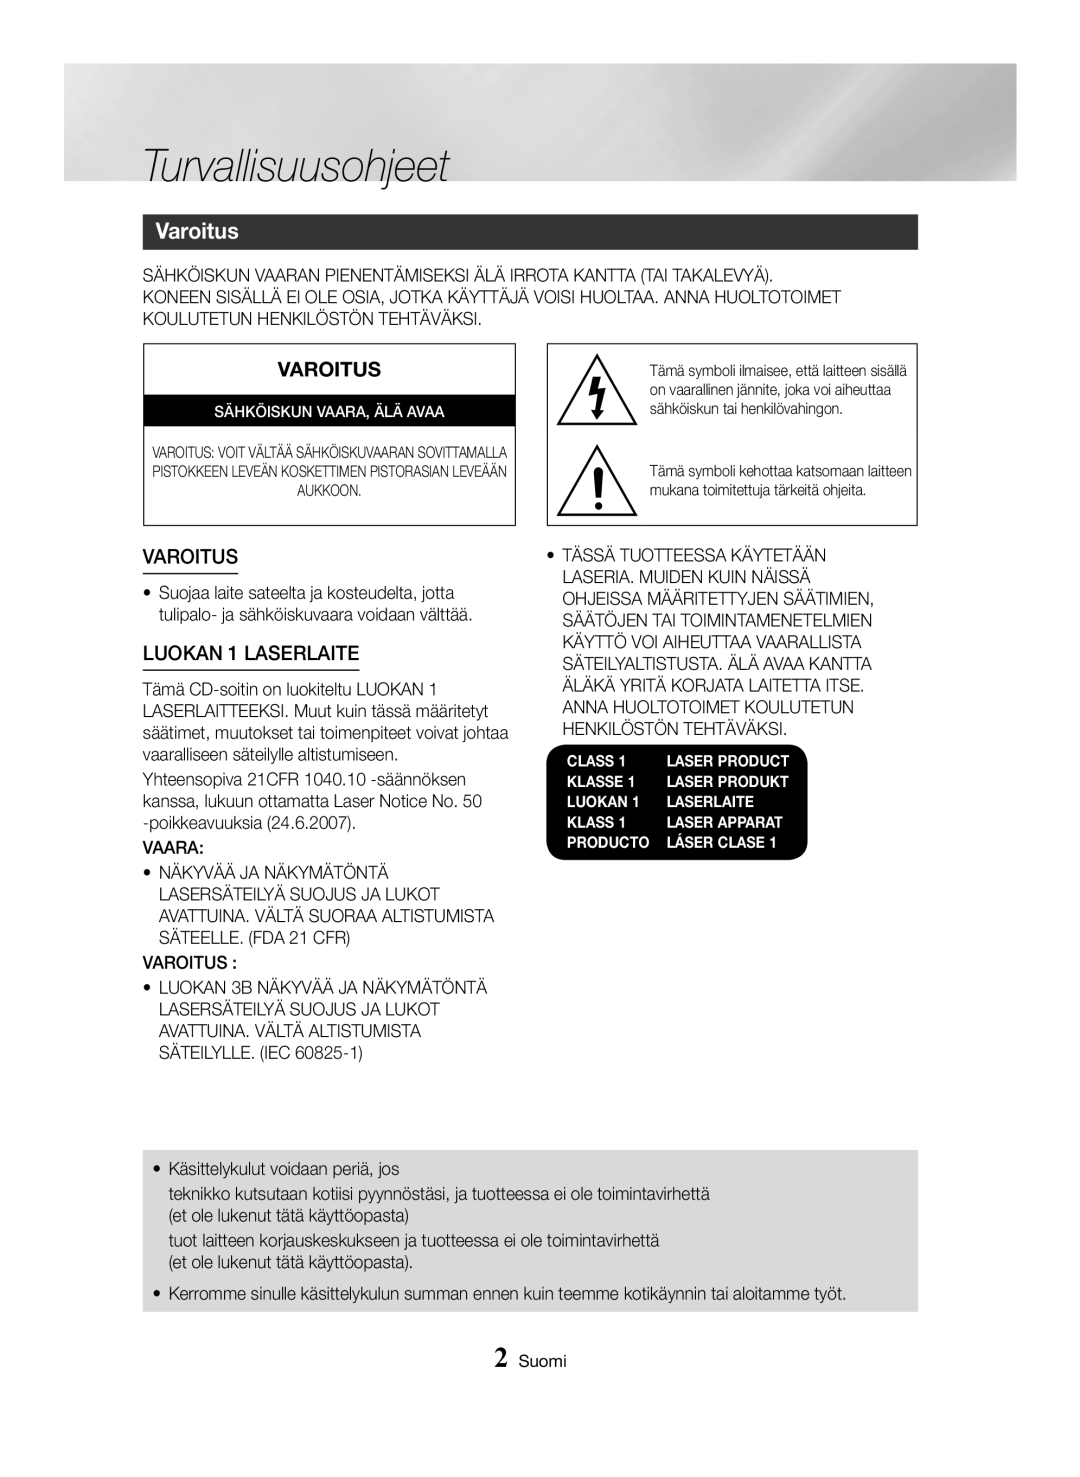 Samsung MX-HS8000/EN, MX-HS8000/ZF manual Turvallisuusohjeet, Varoitus, LUOKAN 1 LASERLAITE 